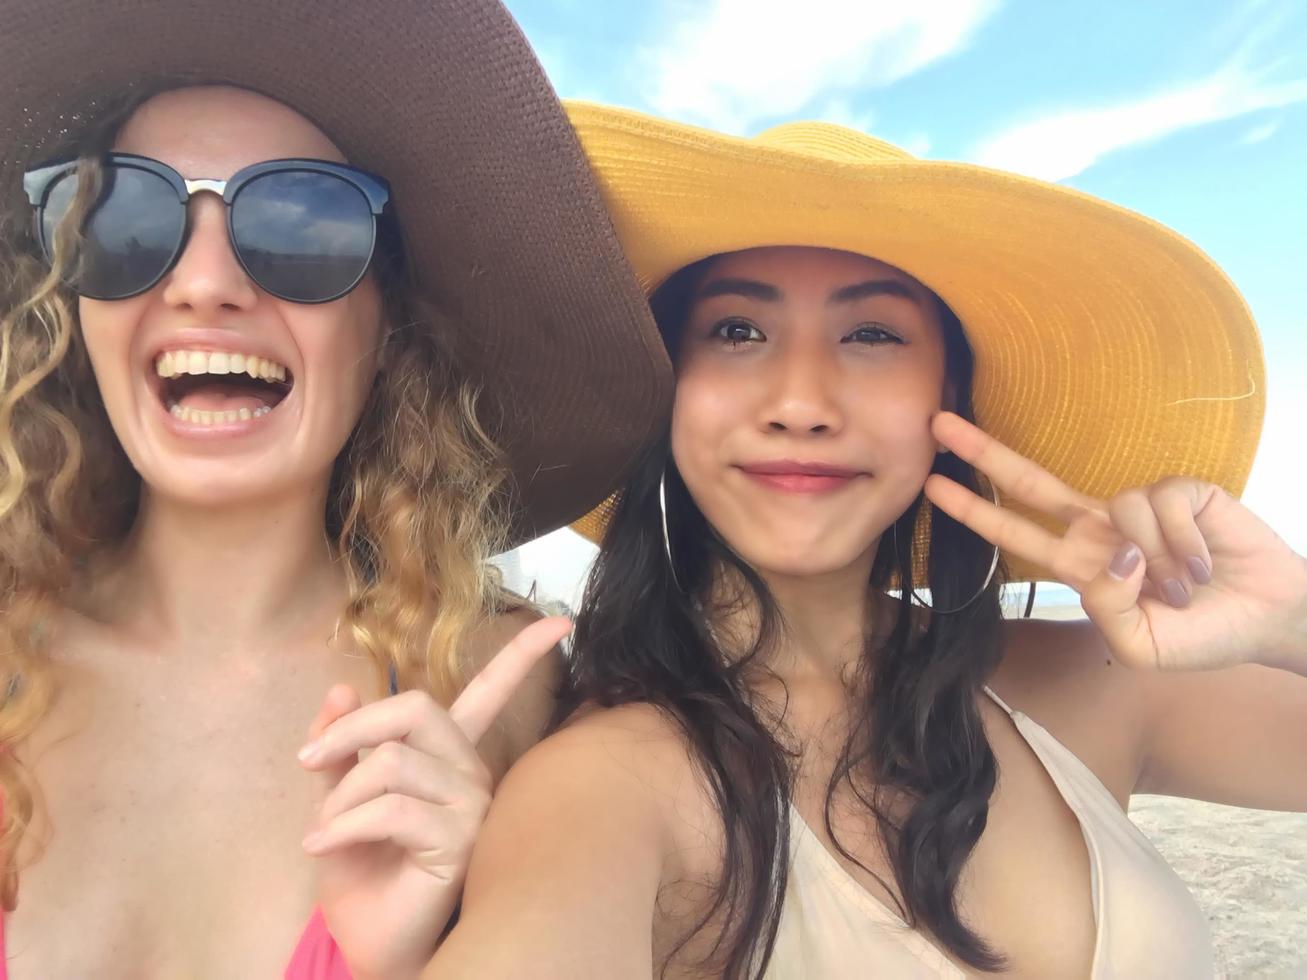 kvinnor tar foton och selfies med vänner på sandstranden på sommaren.